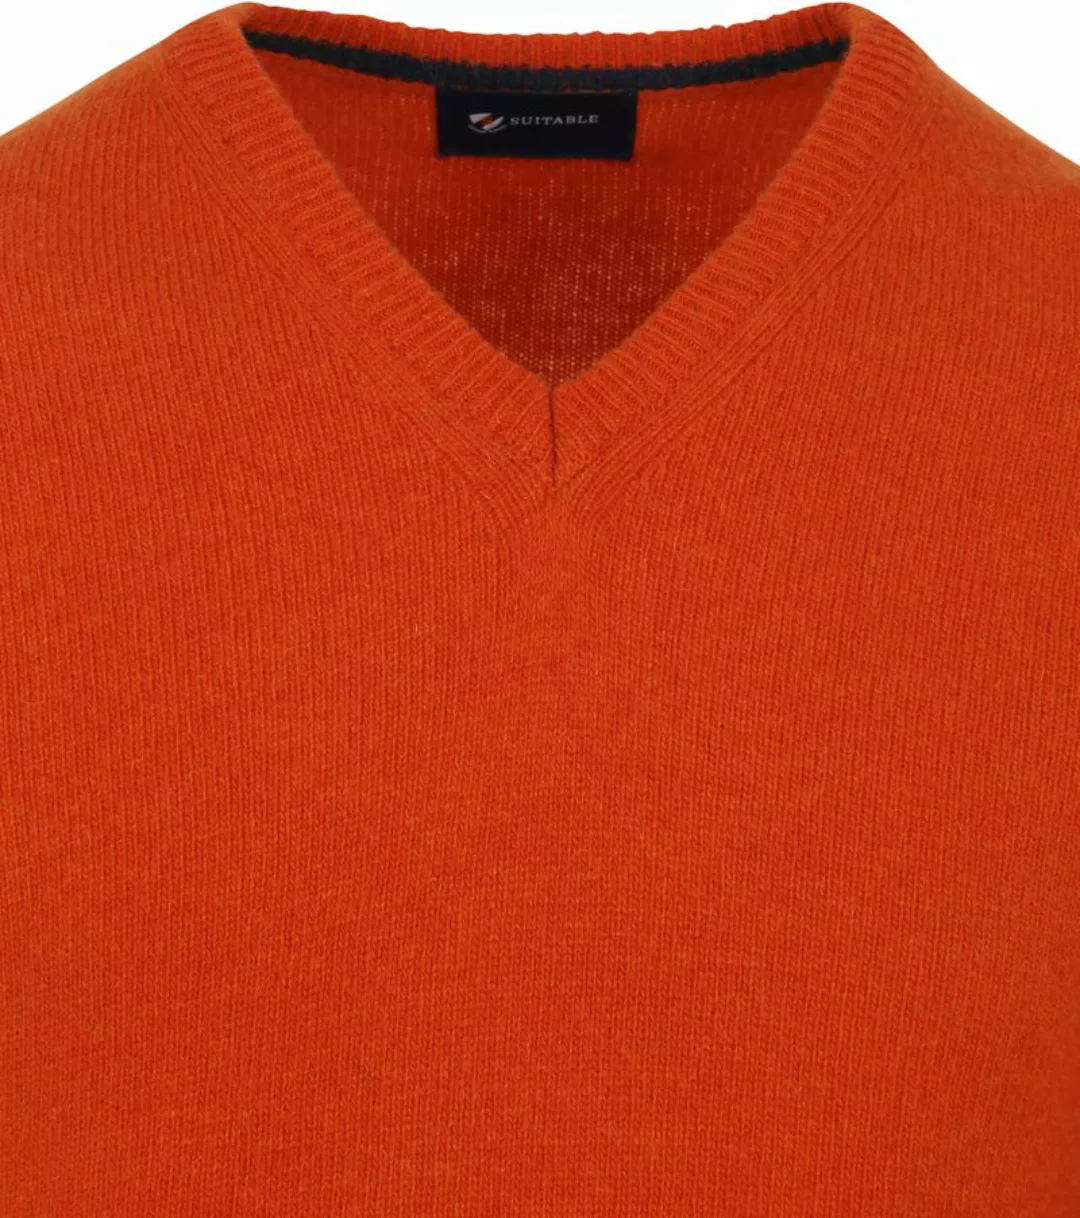 Suitable Pullover Wolle V-Neck Orange - Größe L günstig online kaufen